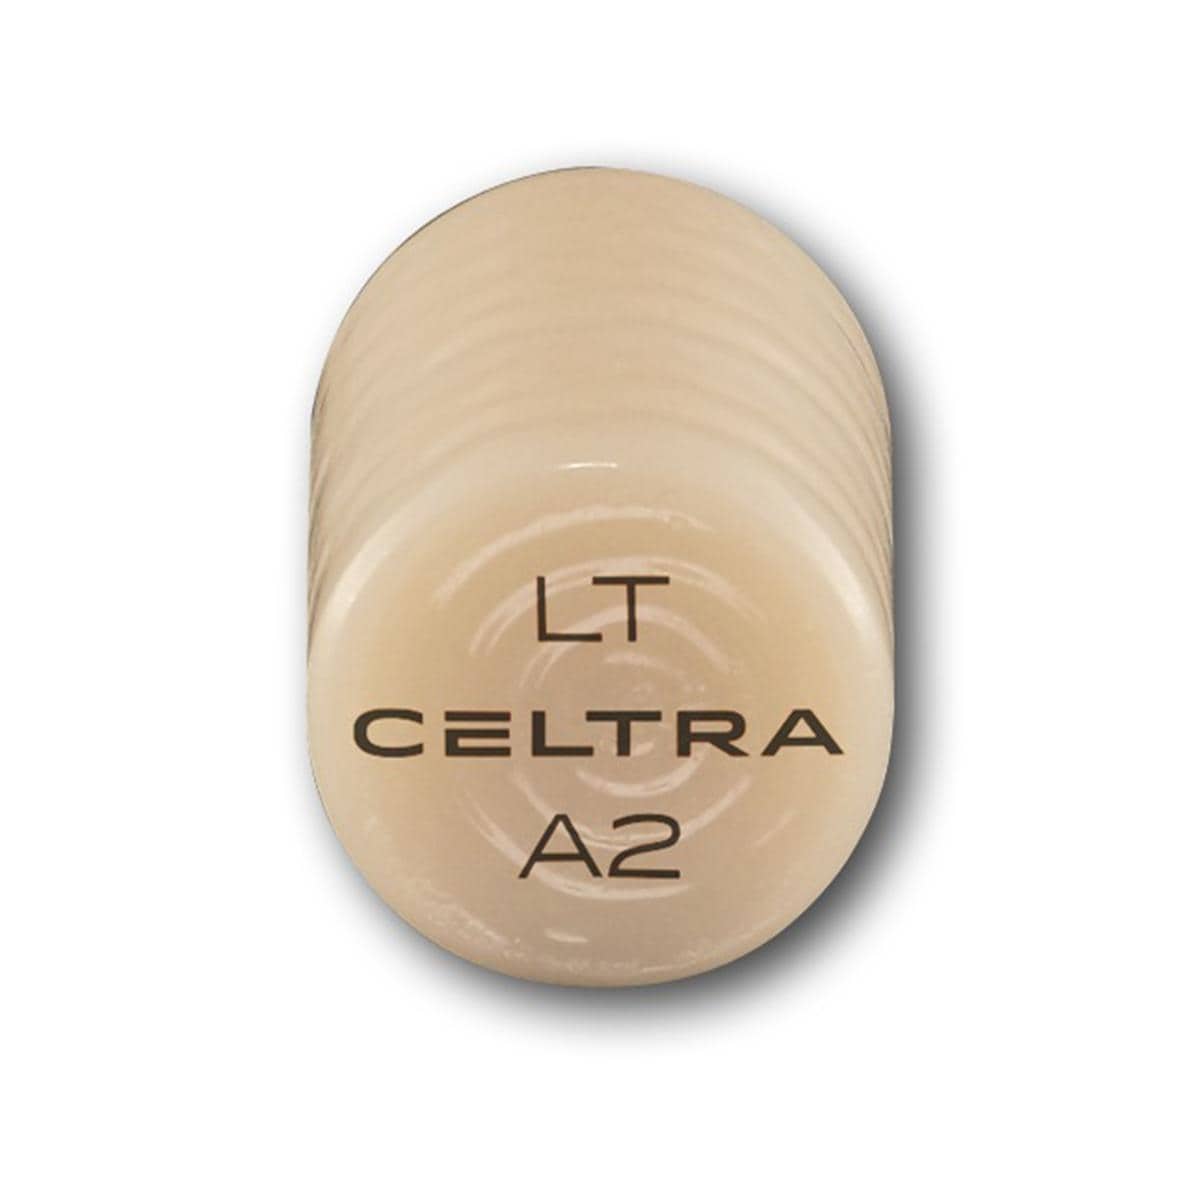 CELTRA® Press LT - A2, Packung 3 x 6 g